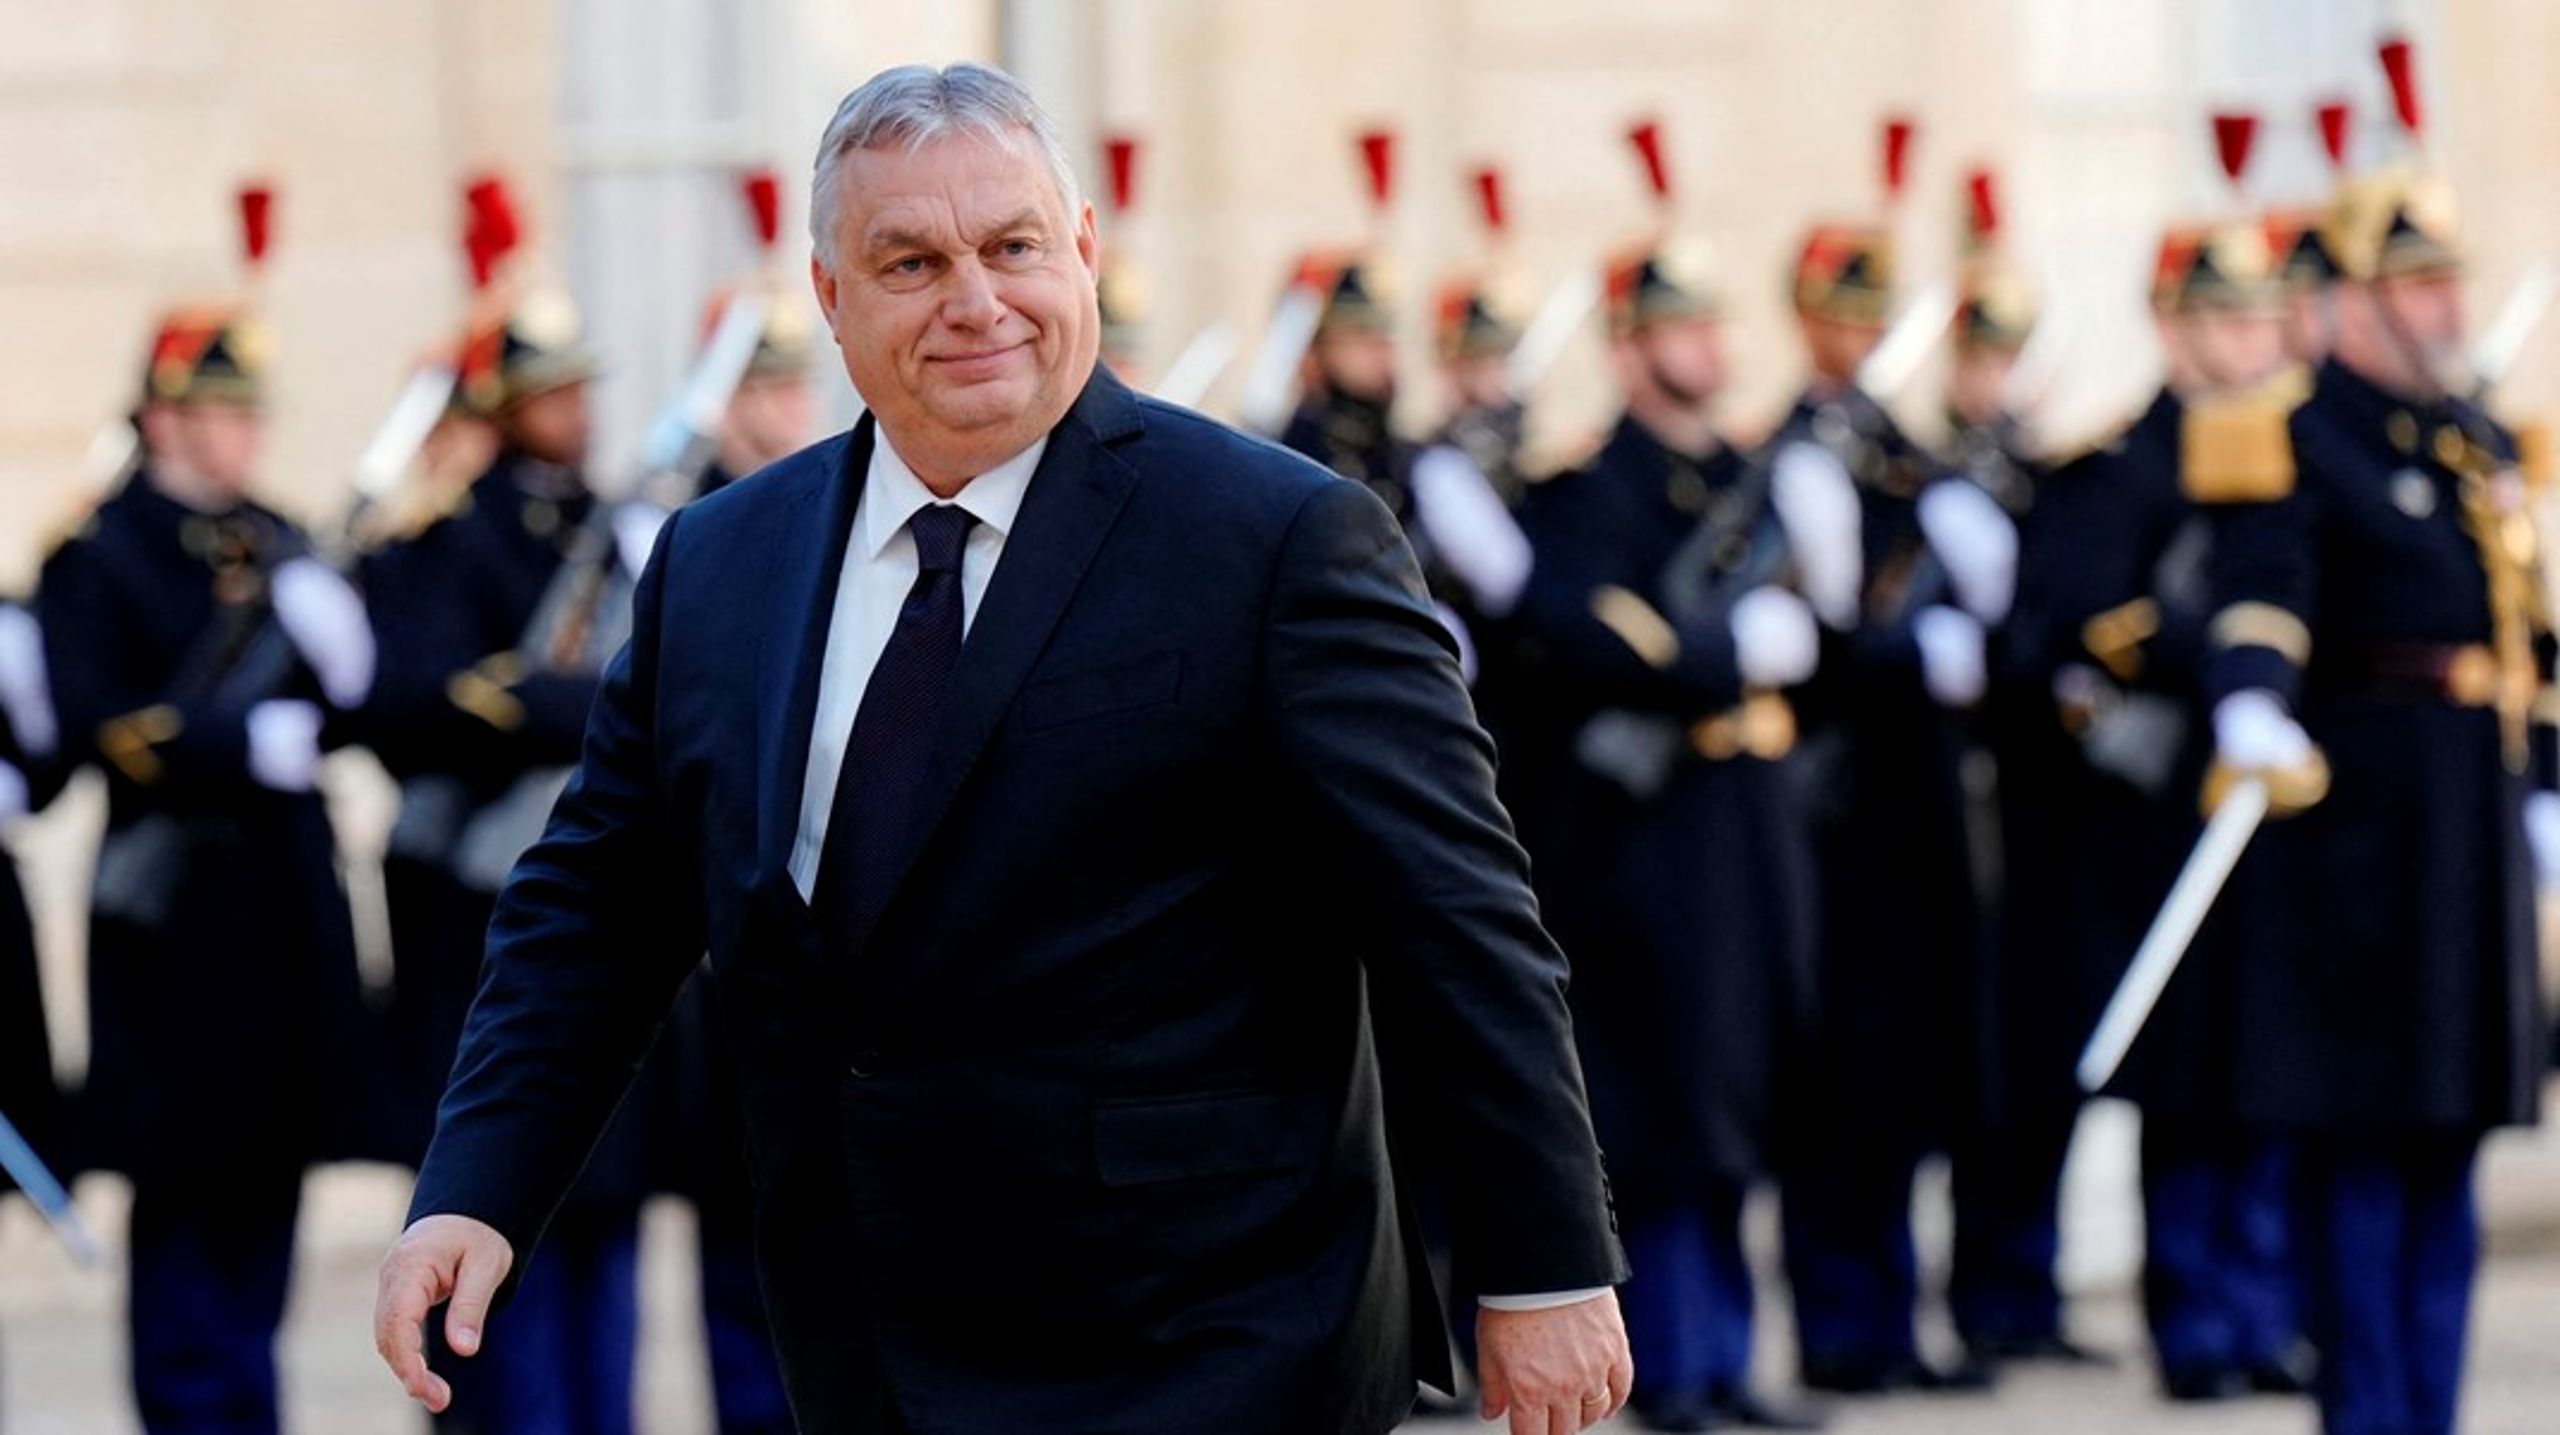 Ungarns Viktor Orbán har brugt sin&nbsp;vetoret i EU til at blokere for en beslutning om hjælp til Ukraine over den kommende periode på 50 milliarder euro, skriver Enhedslistens Søren Søndergaard.